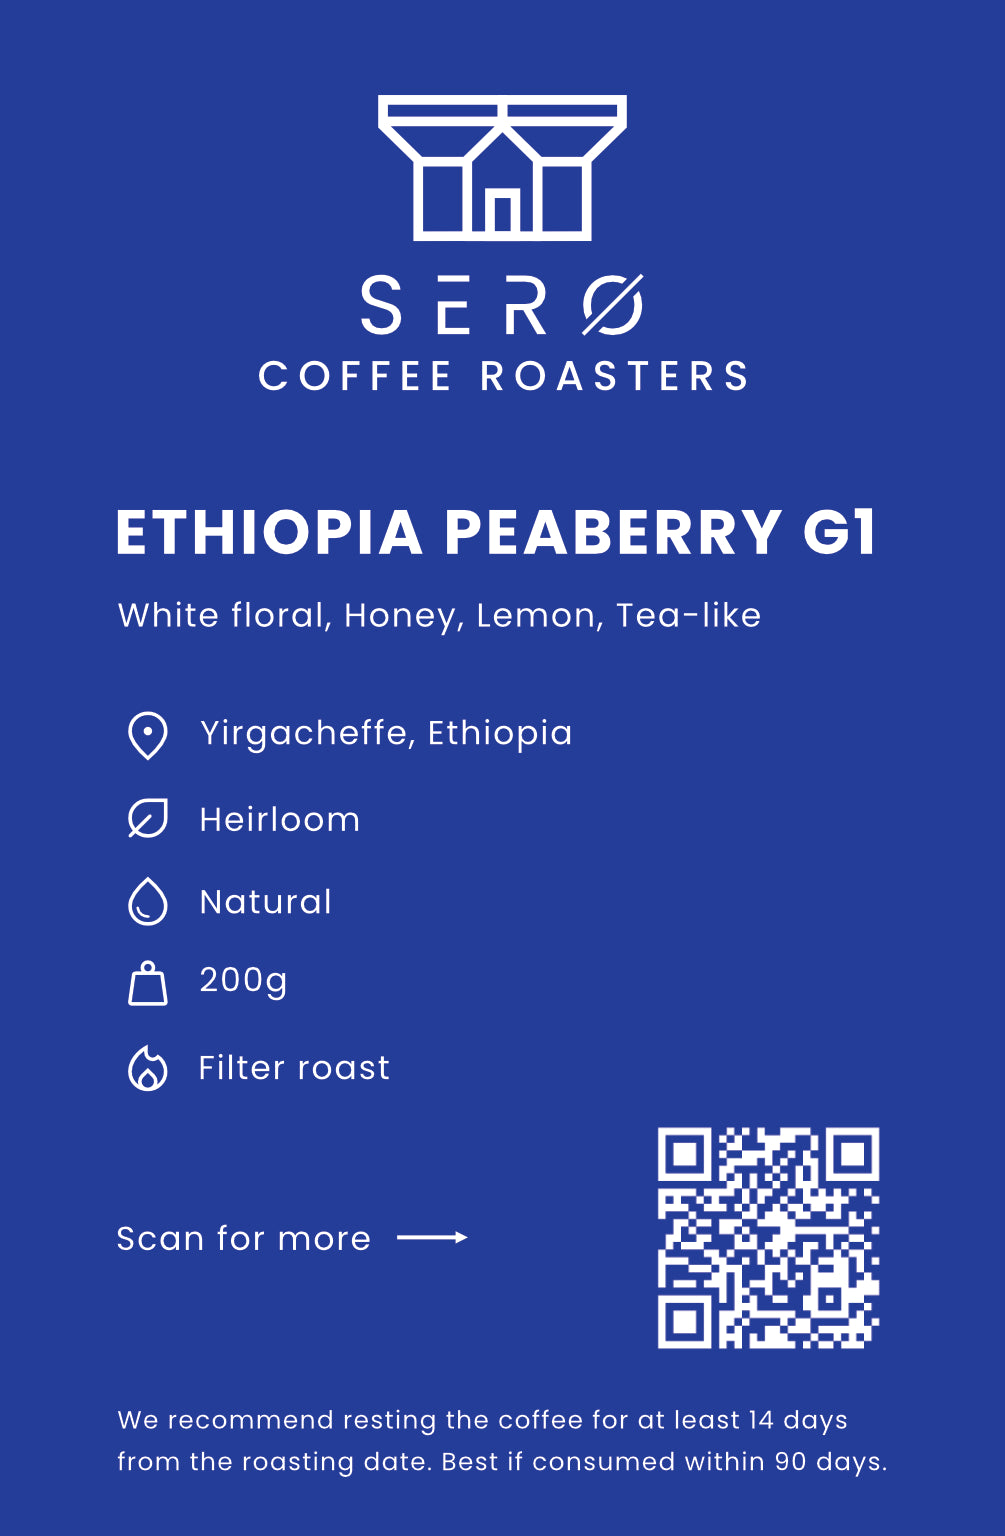 Ethiopia Peaberry G1